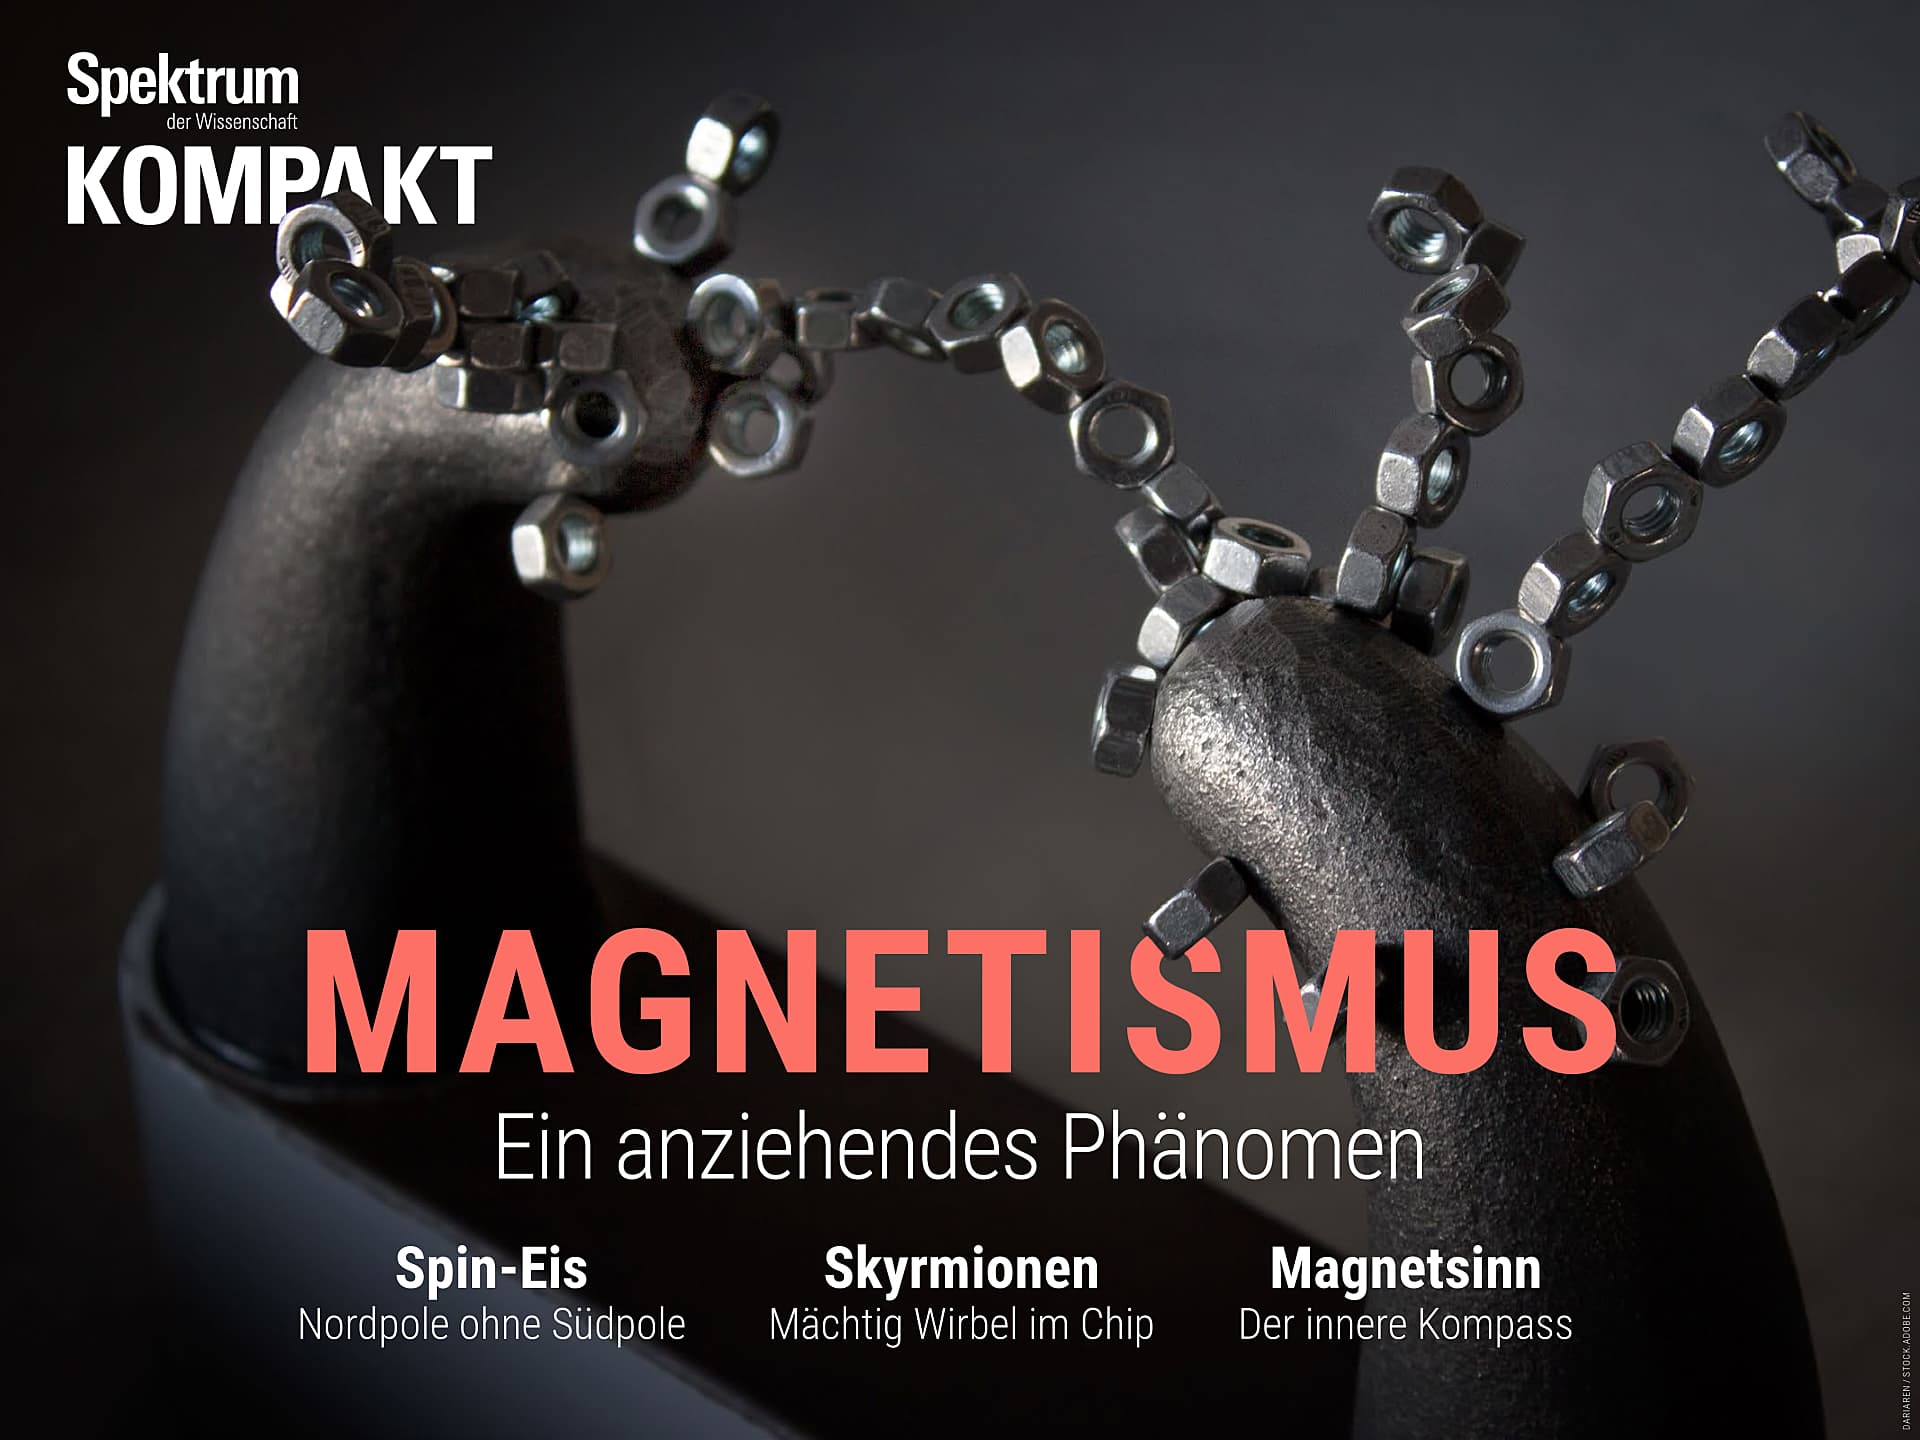 Magnetismus - Ein anziehendes Phänomen